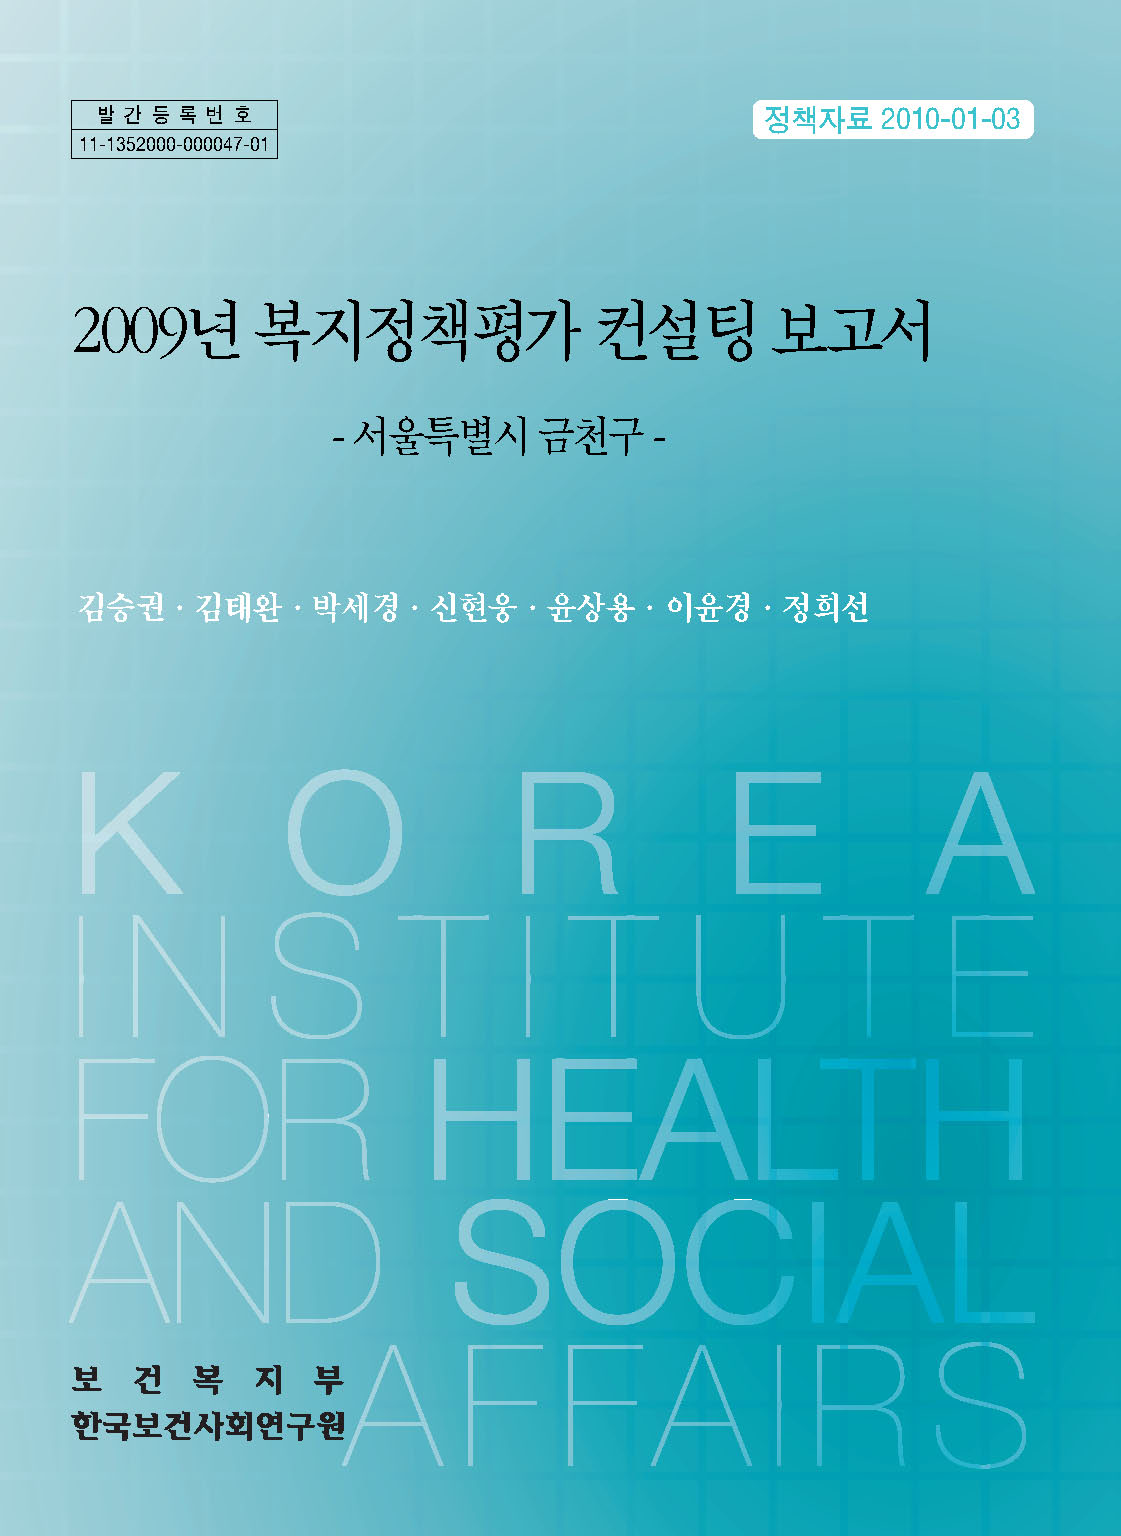 2009년 복지정책평가 컨설팅 보고서 - 서울특별시 금천구-